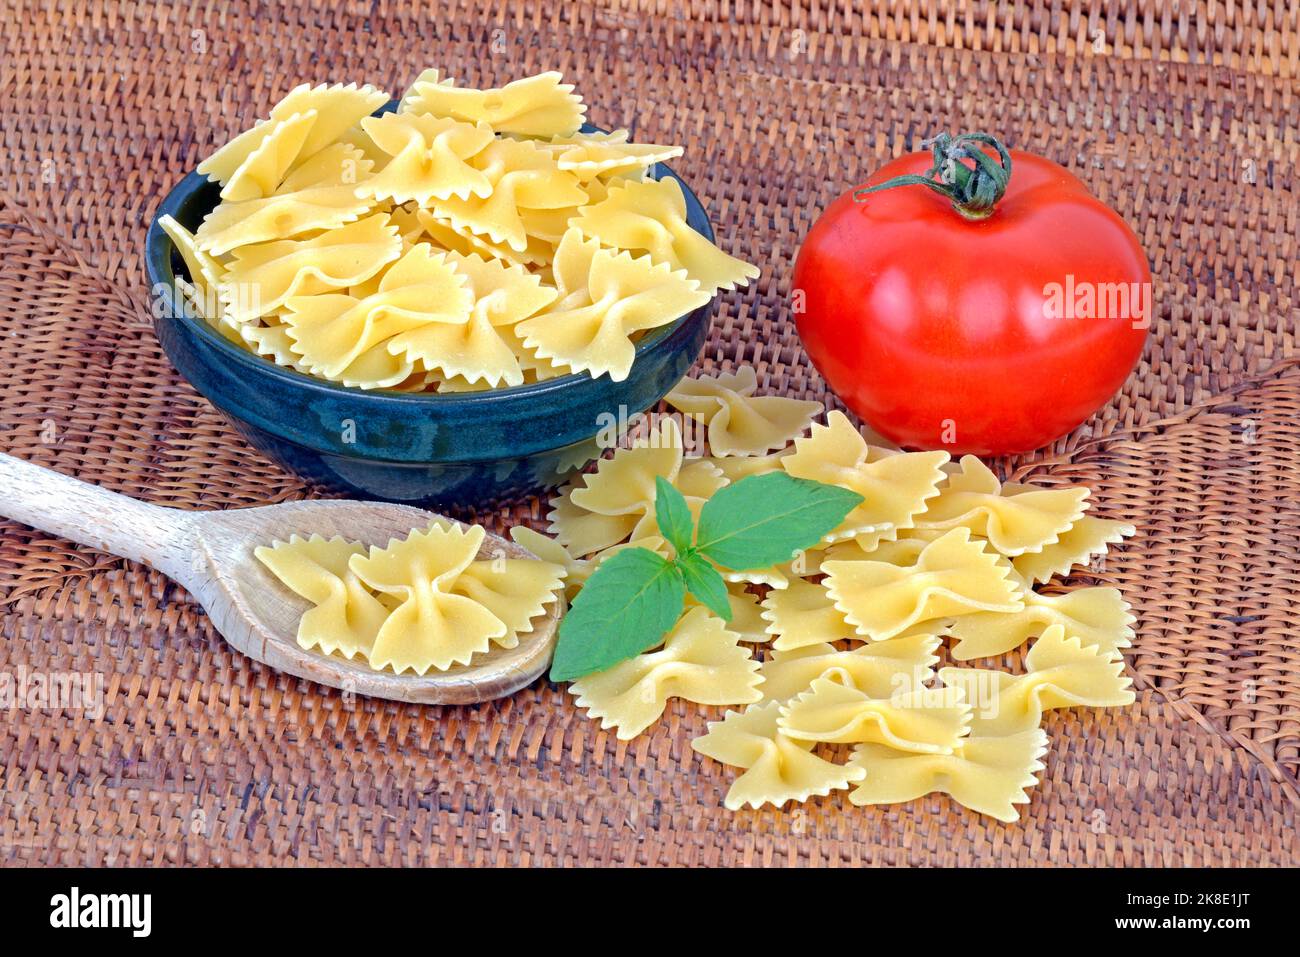 Italian pasta, farfalle, pasta, noodles, tomato, basil Stock Photo